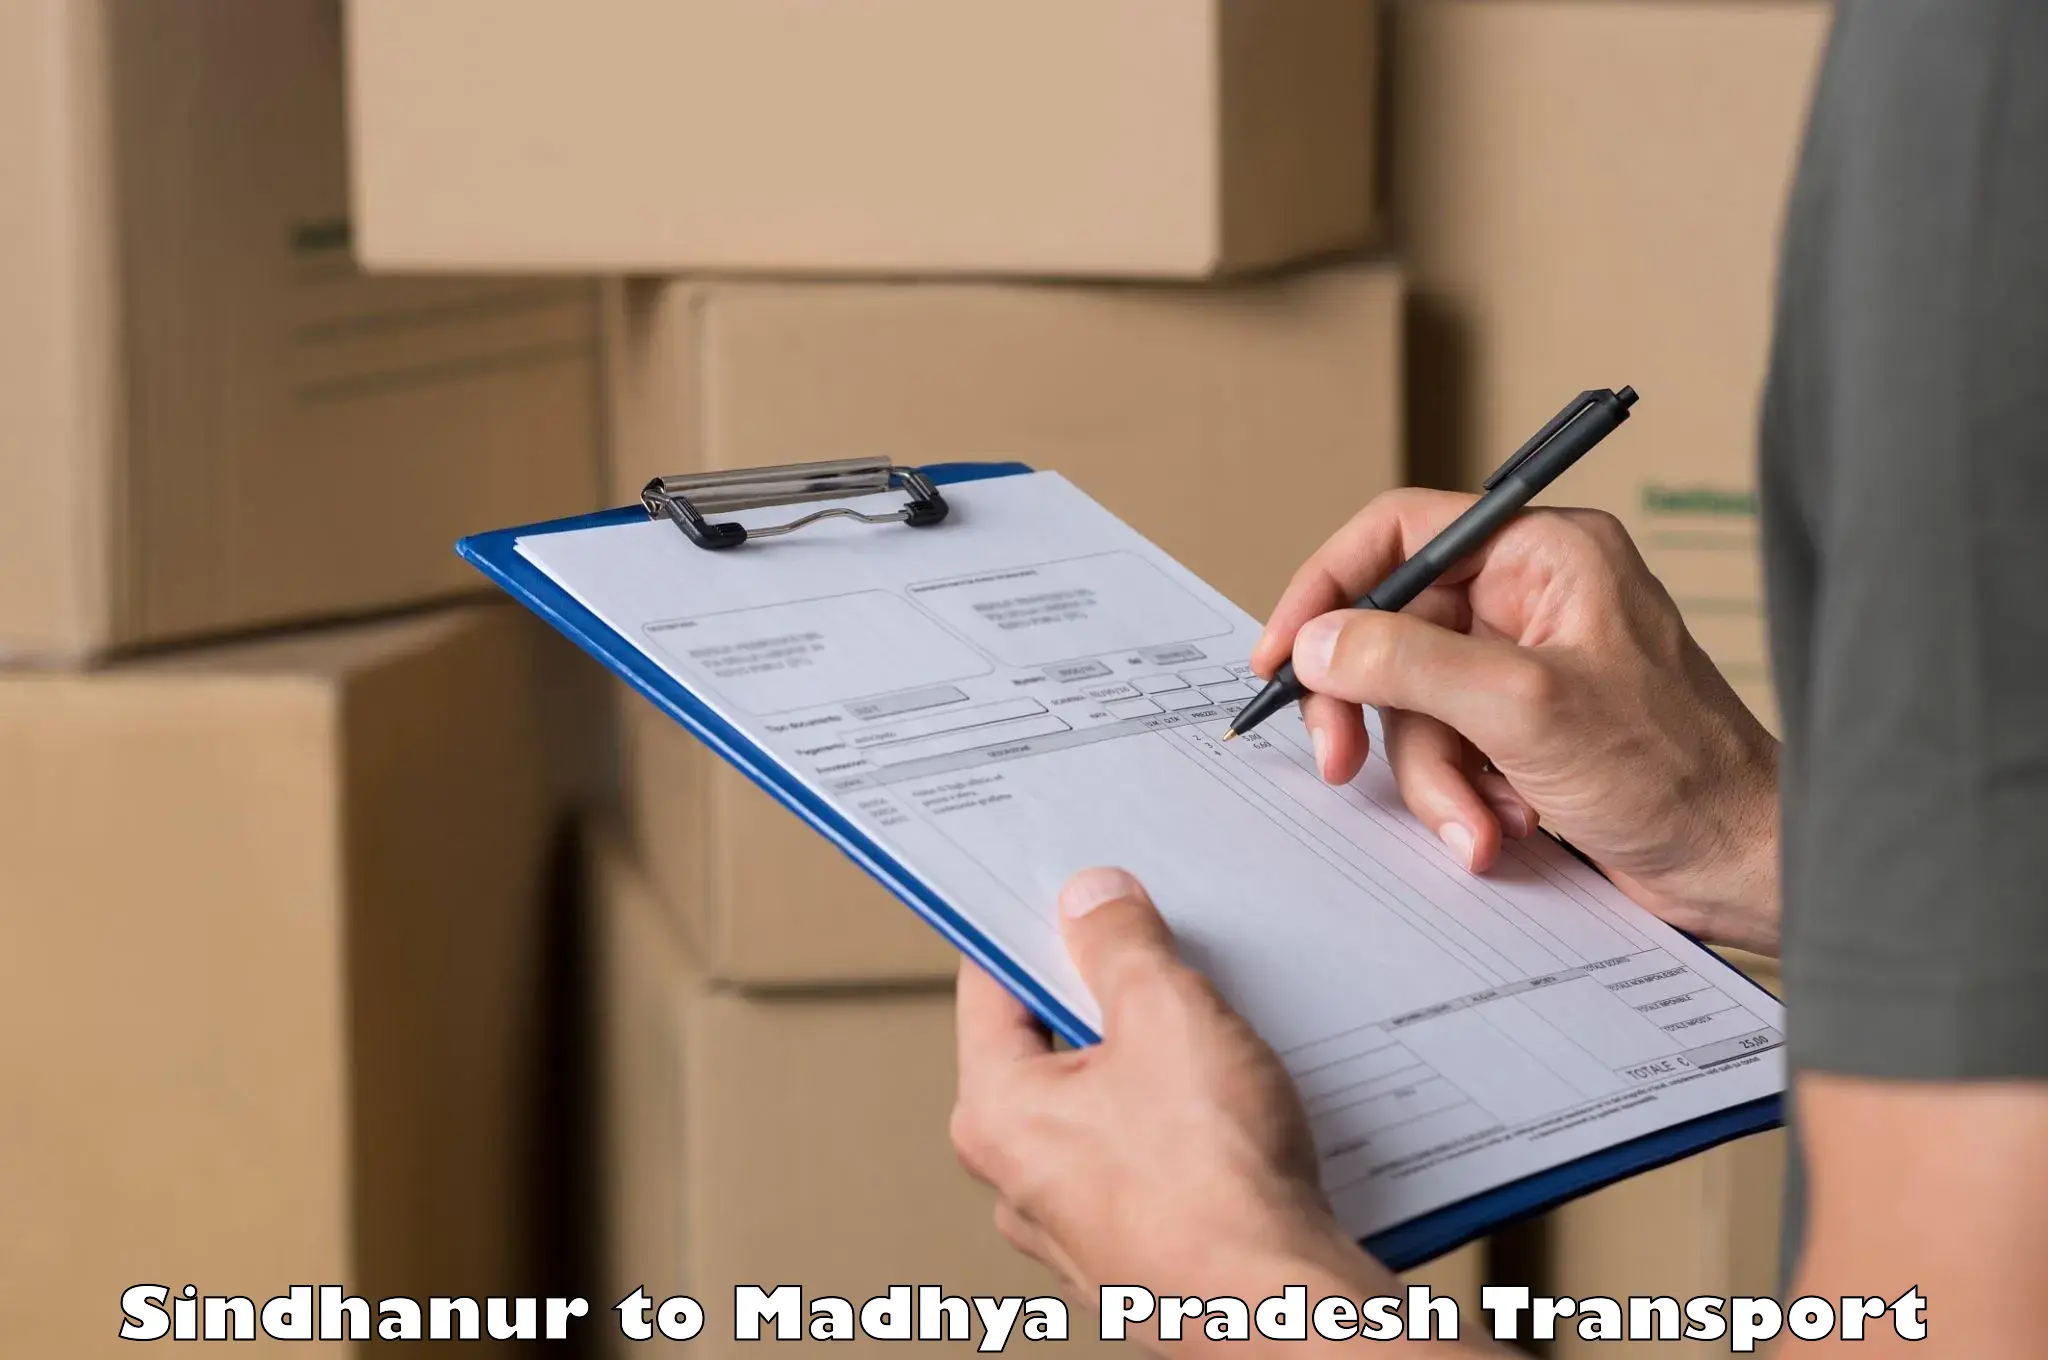 Logistics transportation services Sindhanur to Nagda